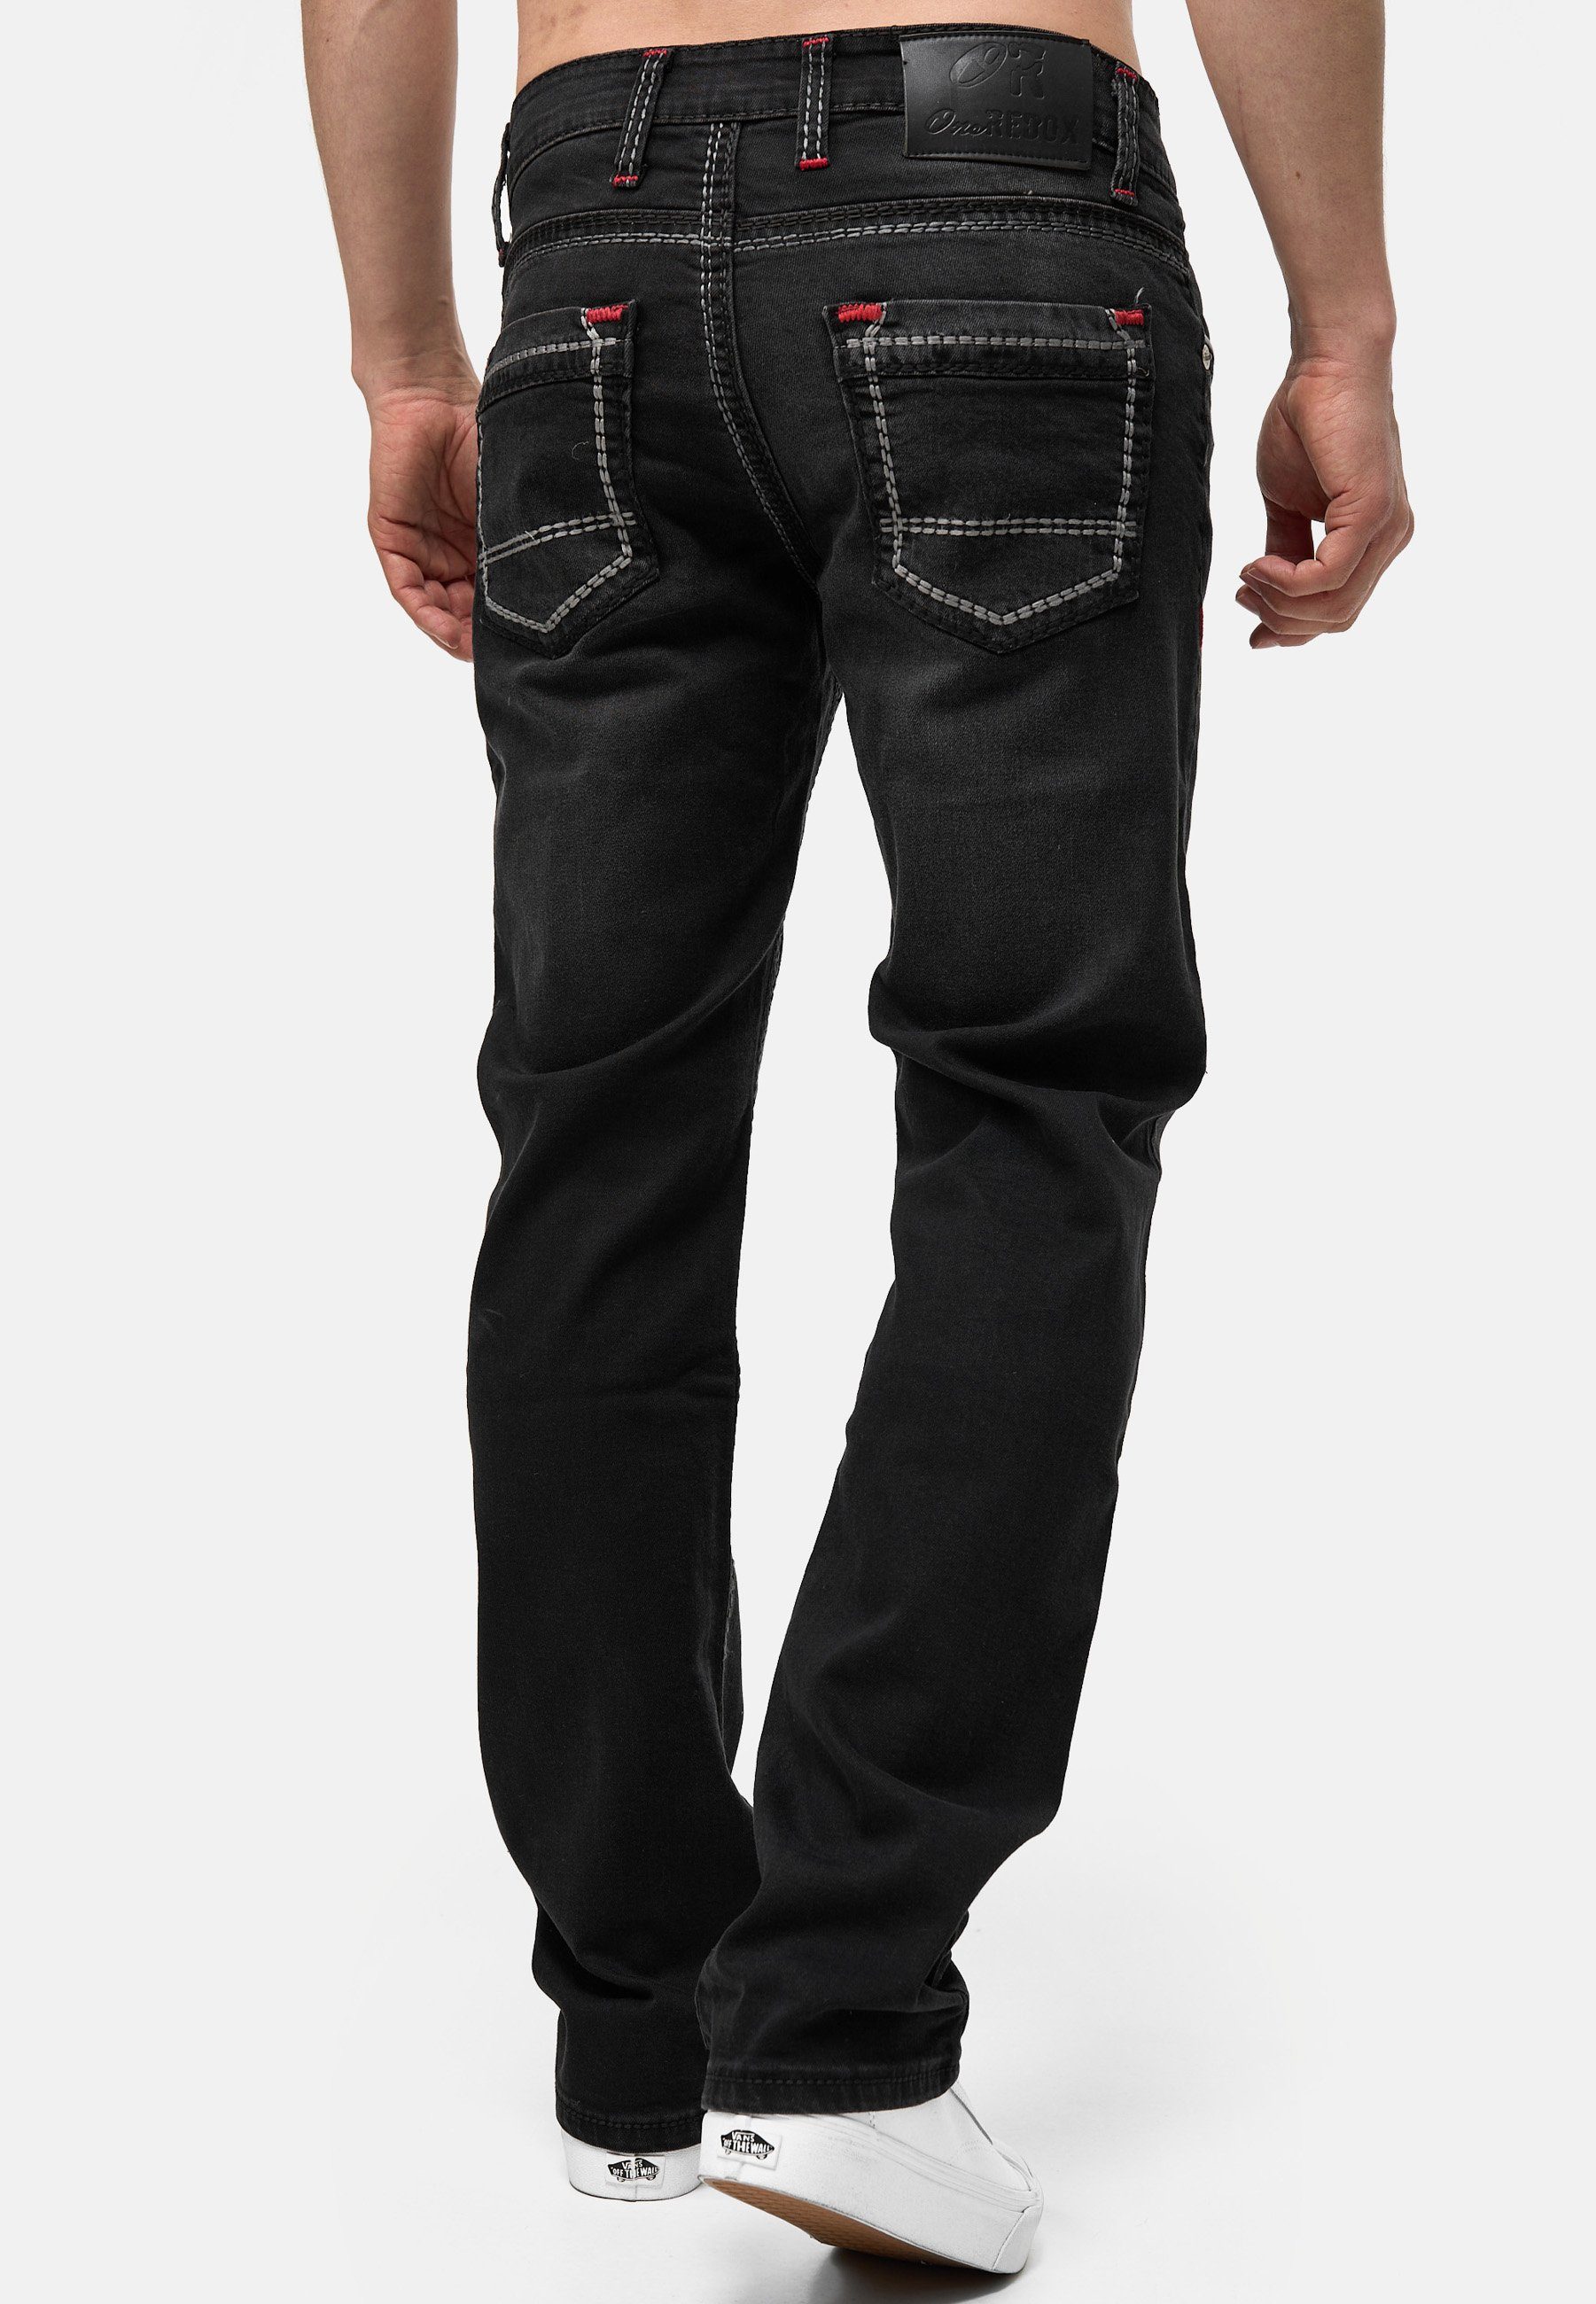 Modell Regular-fit-Jeans 3337 Schwarz Herren Jeans Code47 Code47